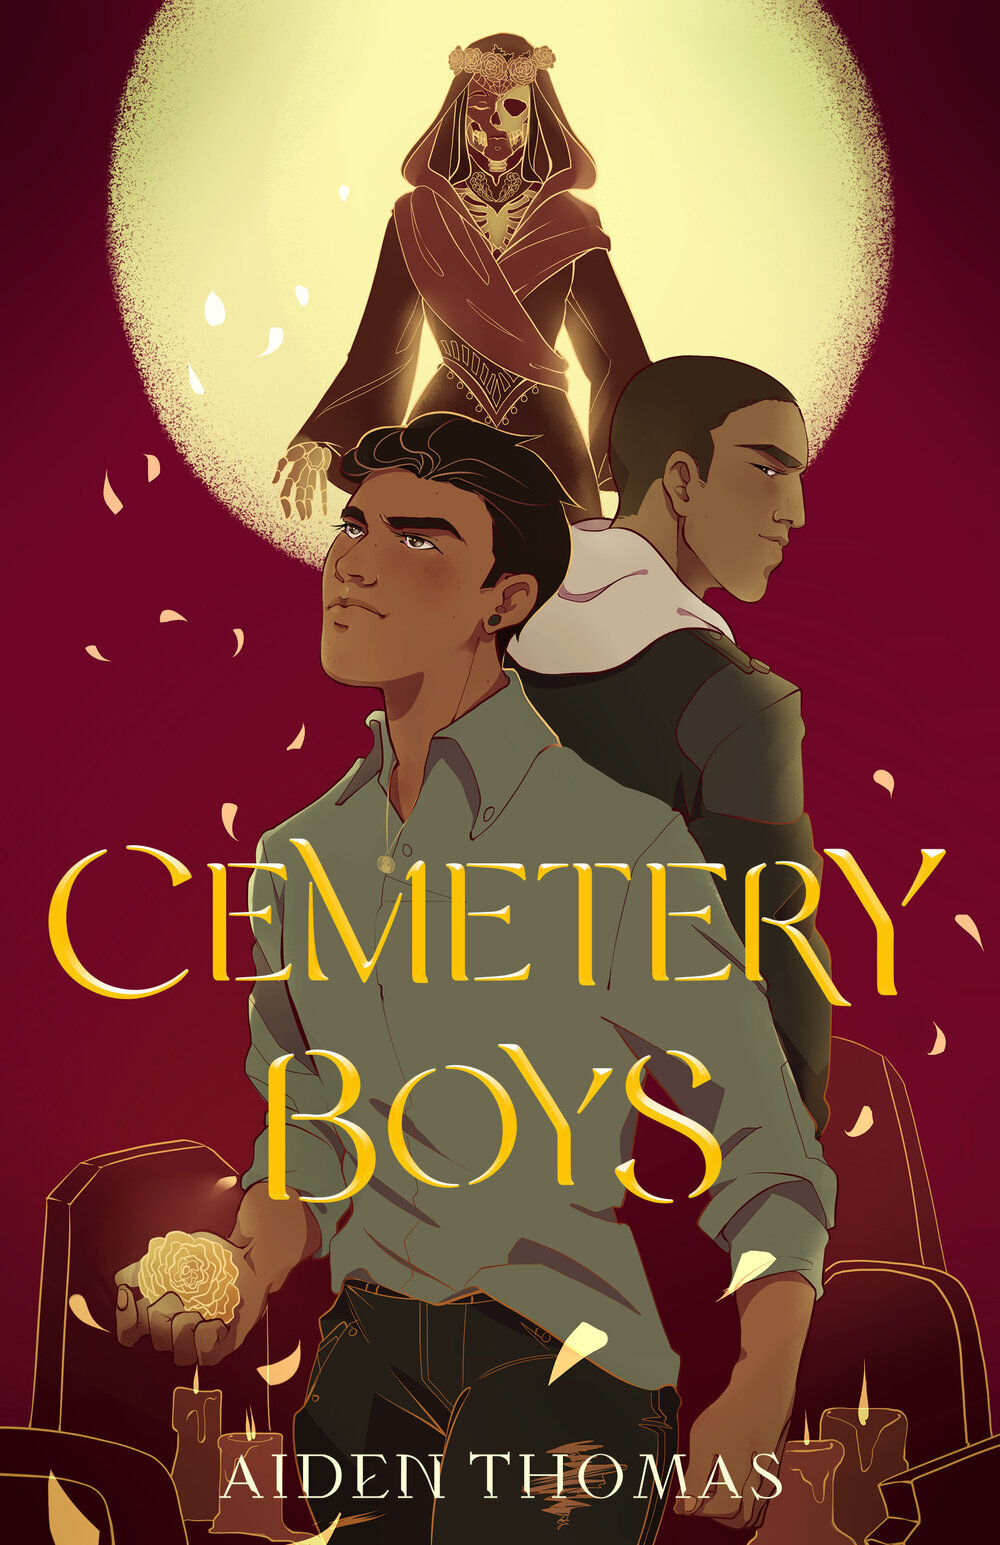 Cemetery Boys — Aiden Thomas